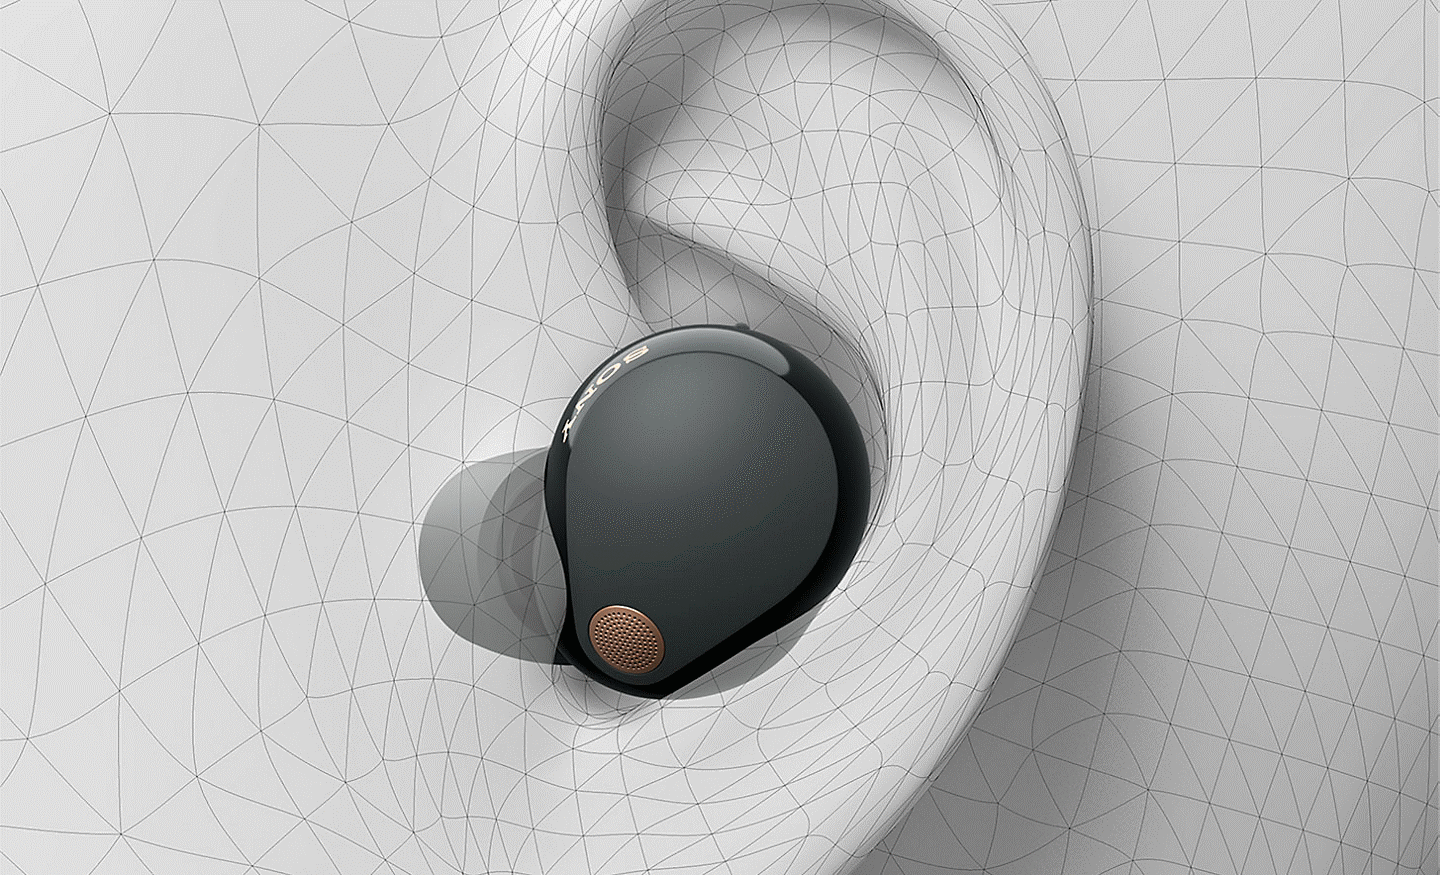 Afbeelding van het WF-1000XM5 oordopje in een 3D-tekening van een oor